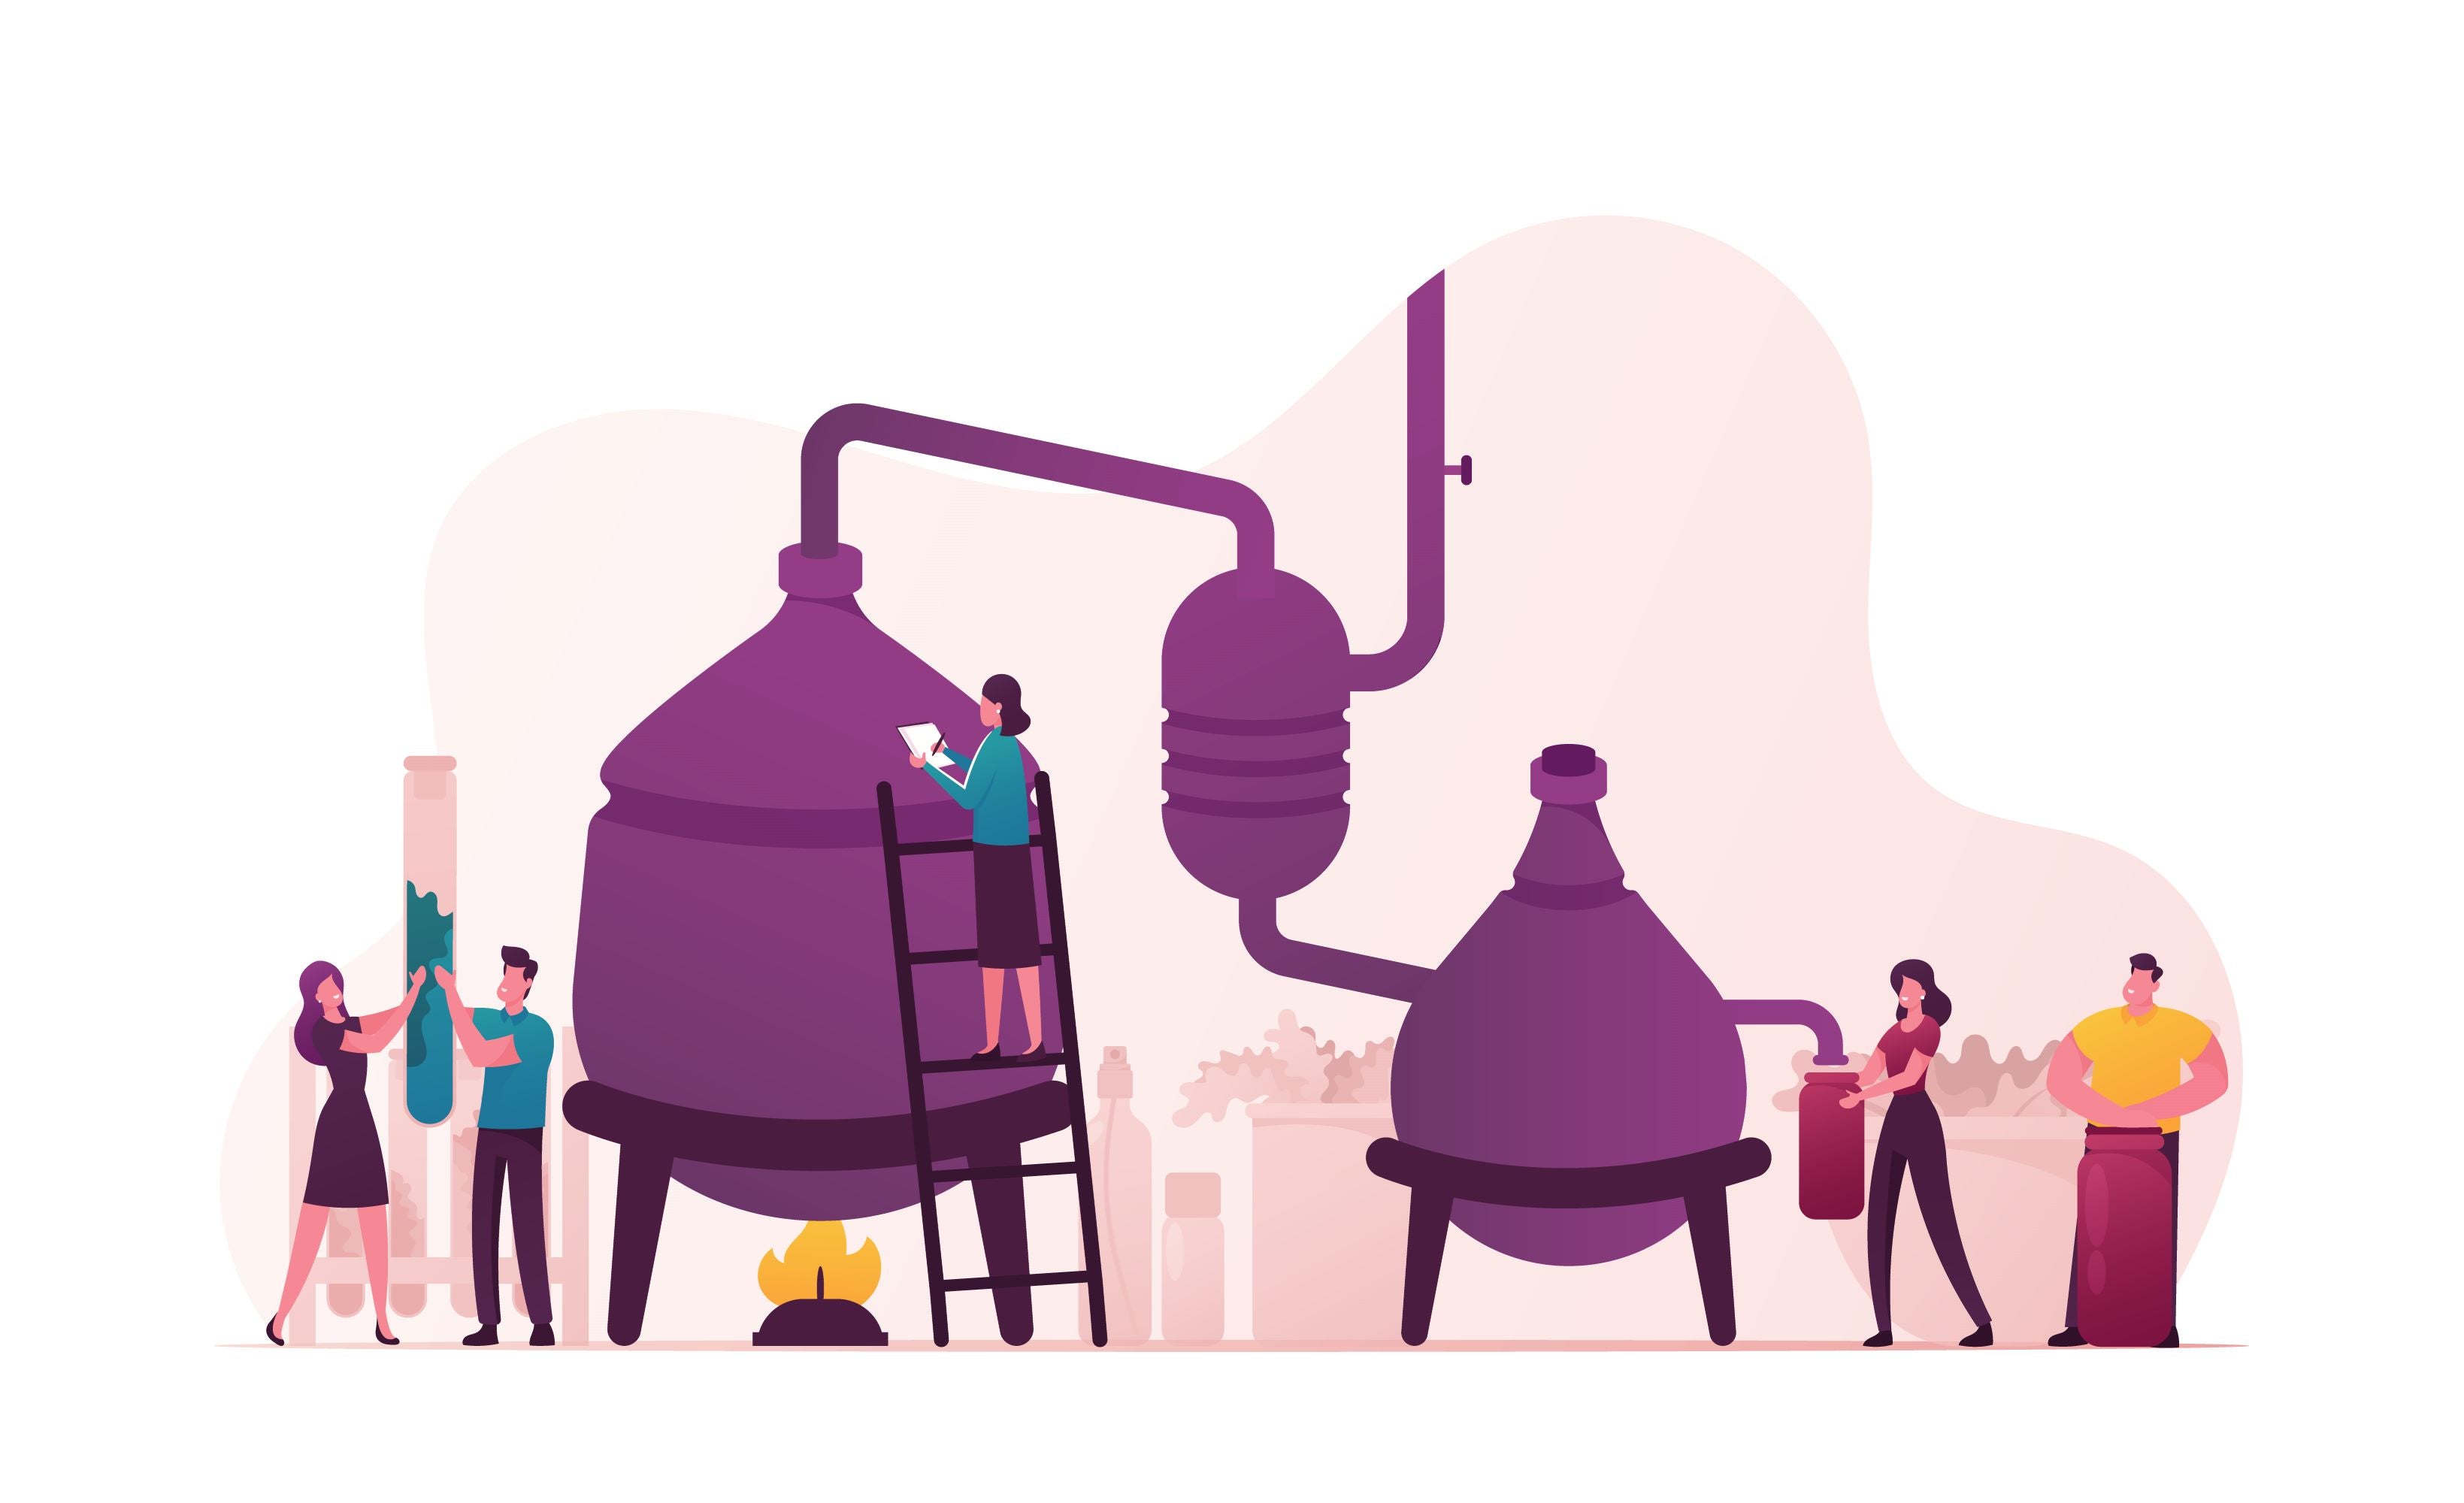 Eine Illustration von einem Destillierungsprozess